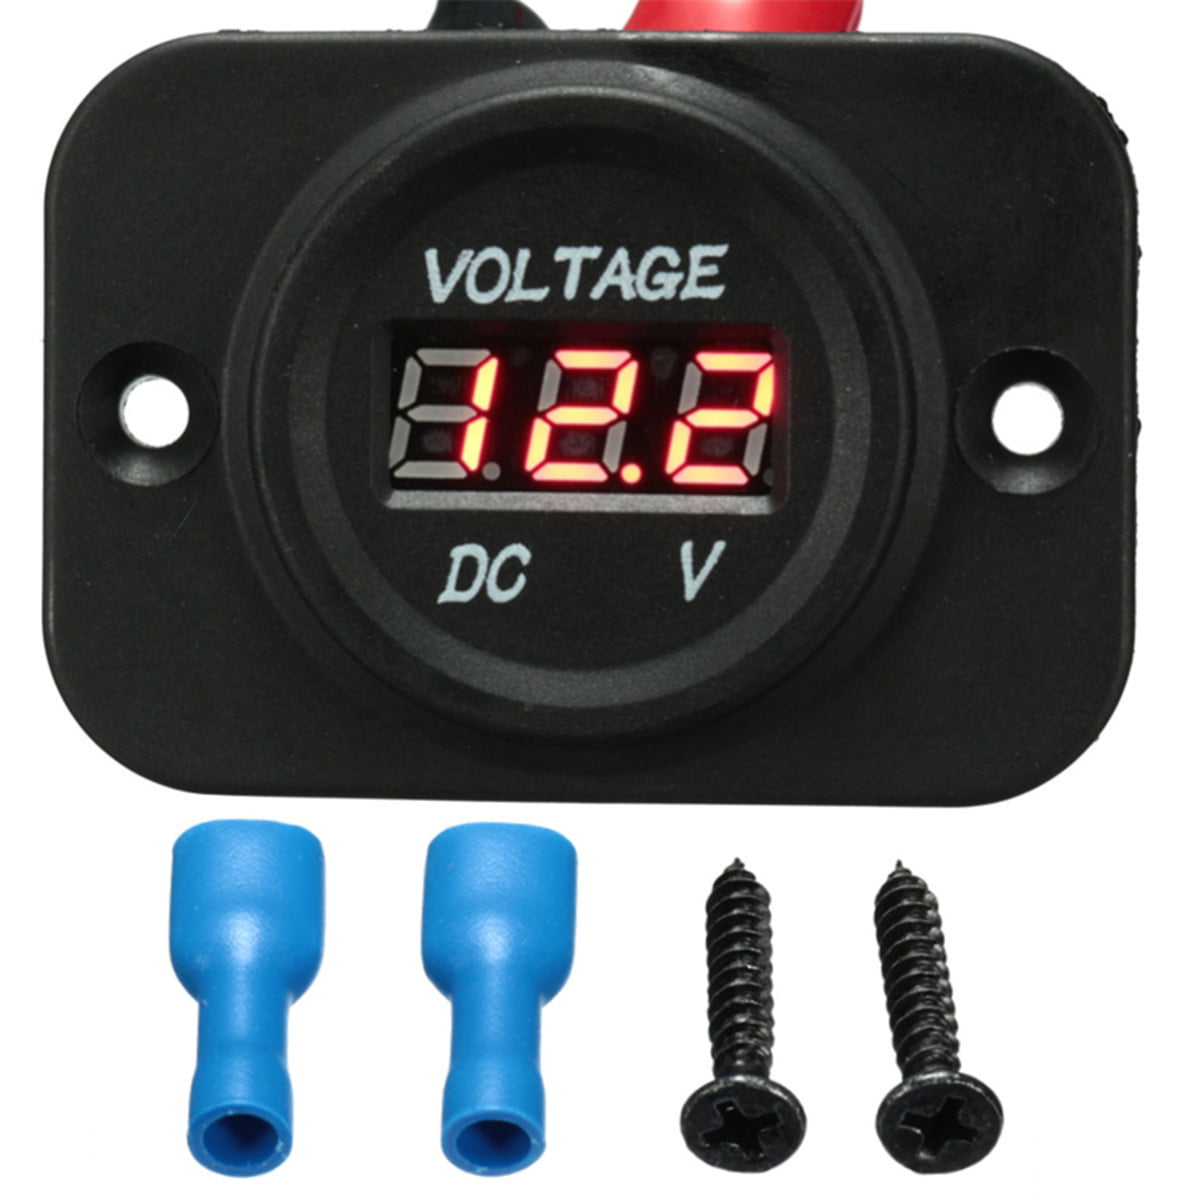 Digital LED Motorcycle Voltmeter Voltage Panel Meter DC 9V to 24V Waterproof